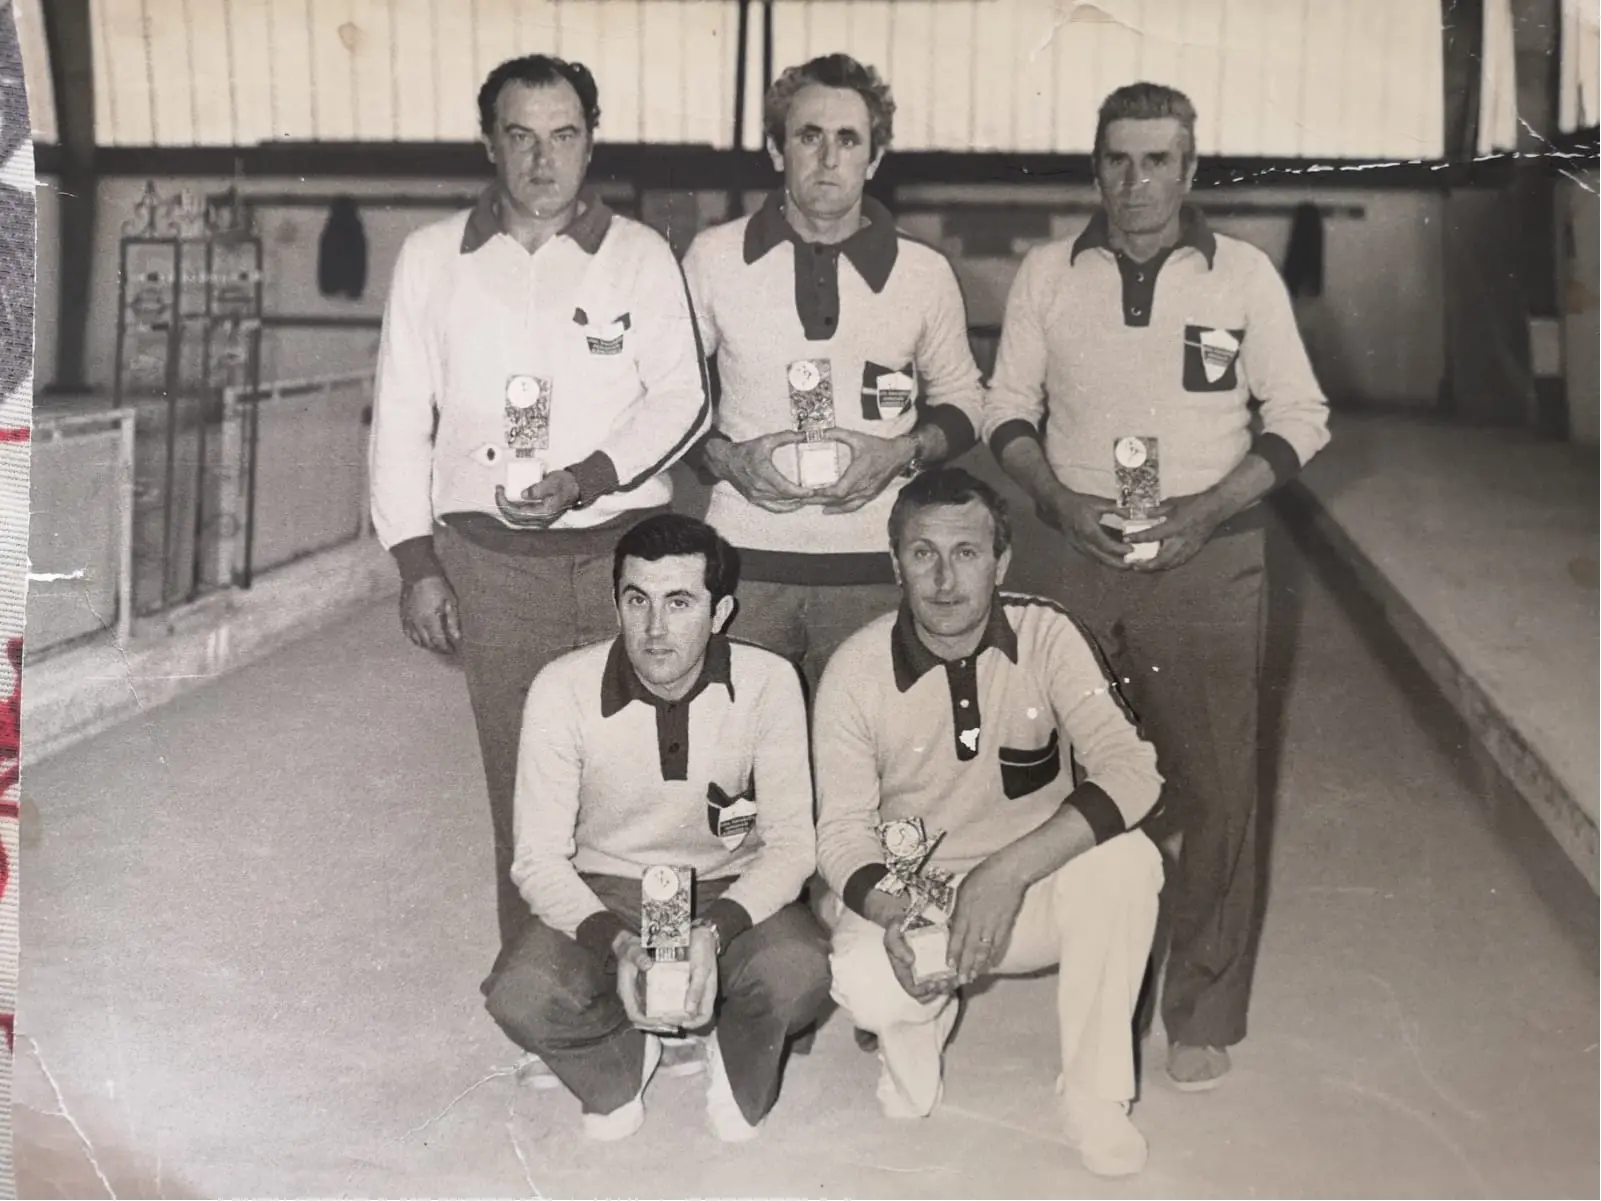 Arborea, la squadra del Circolo ricreativo bocce, da sinistra in piedi: Boschetto, Rino Veiceschi, Bergo. In basso da sinistra: Bruno Veiceschi e Aldo Cantini